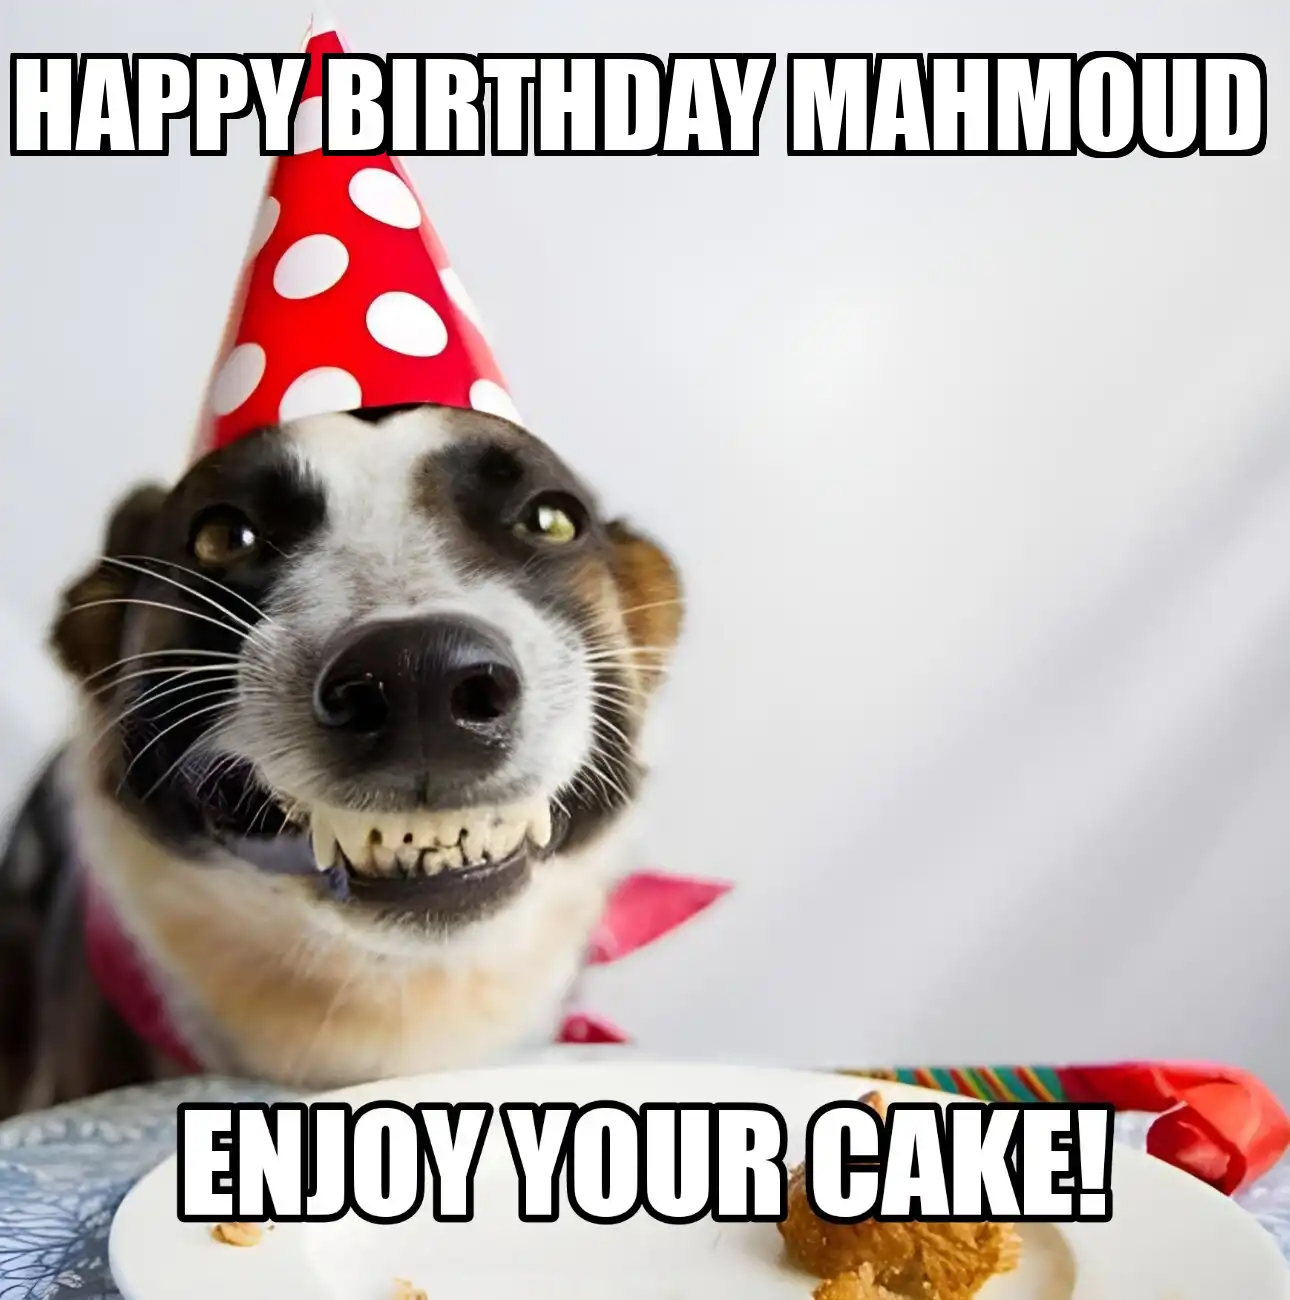 Happy Birthday Mahmoud Enjoy Your Cake Dog Meme